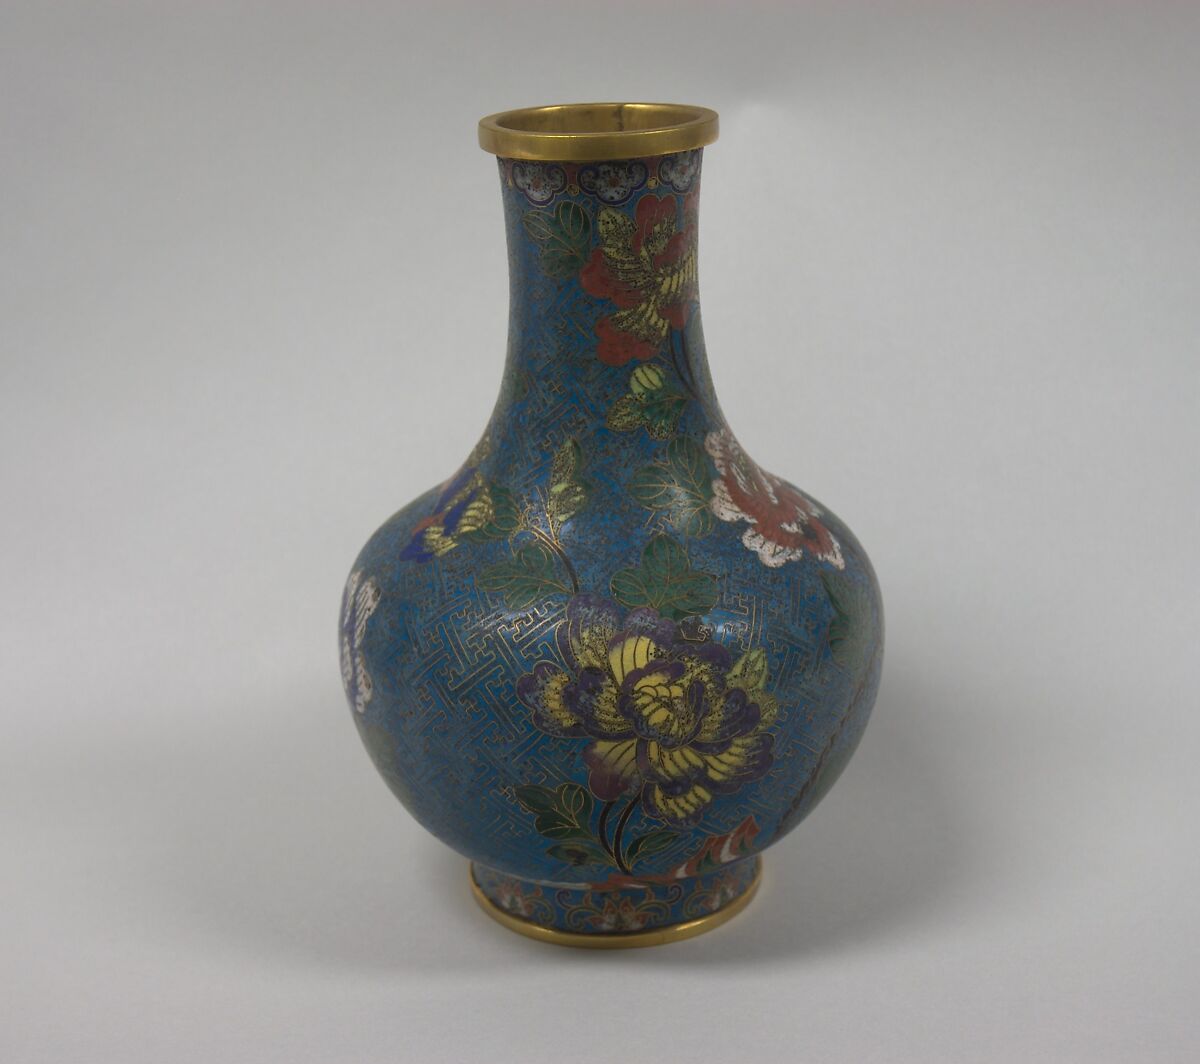 Vase, Cloisonné enamel on copper, China 